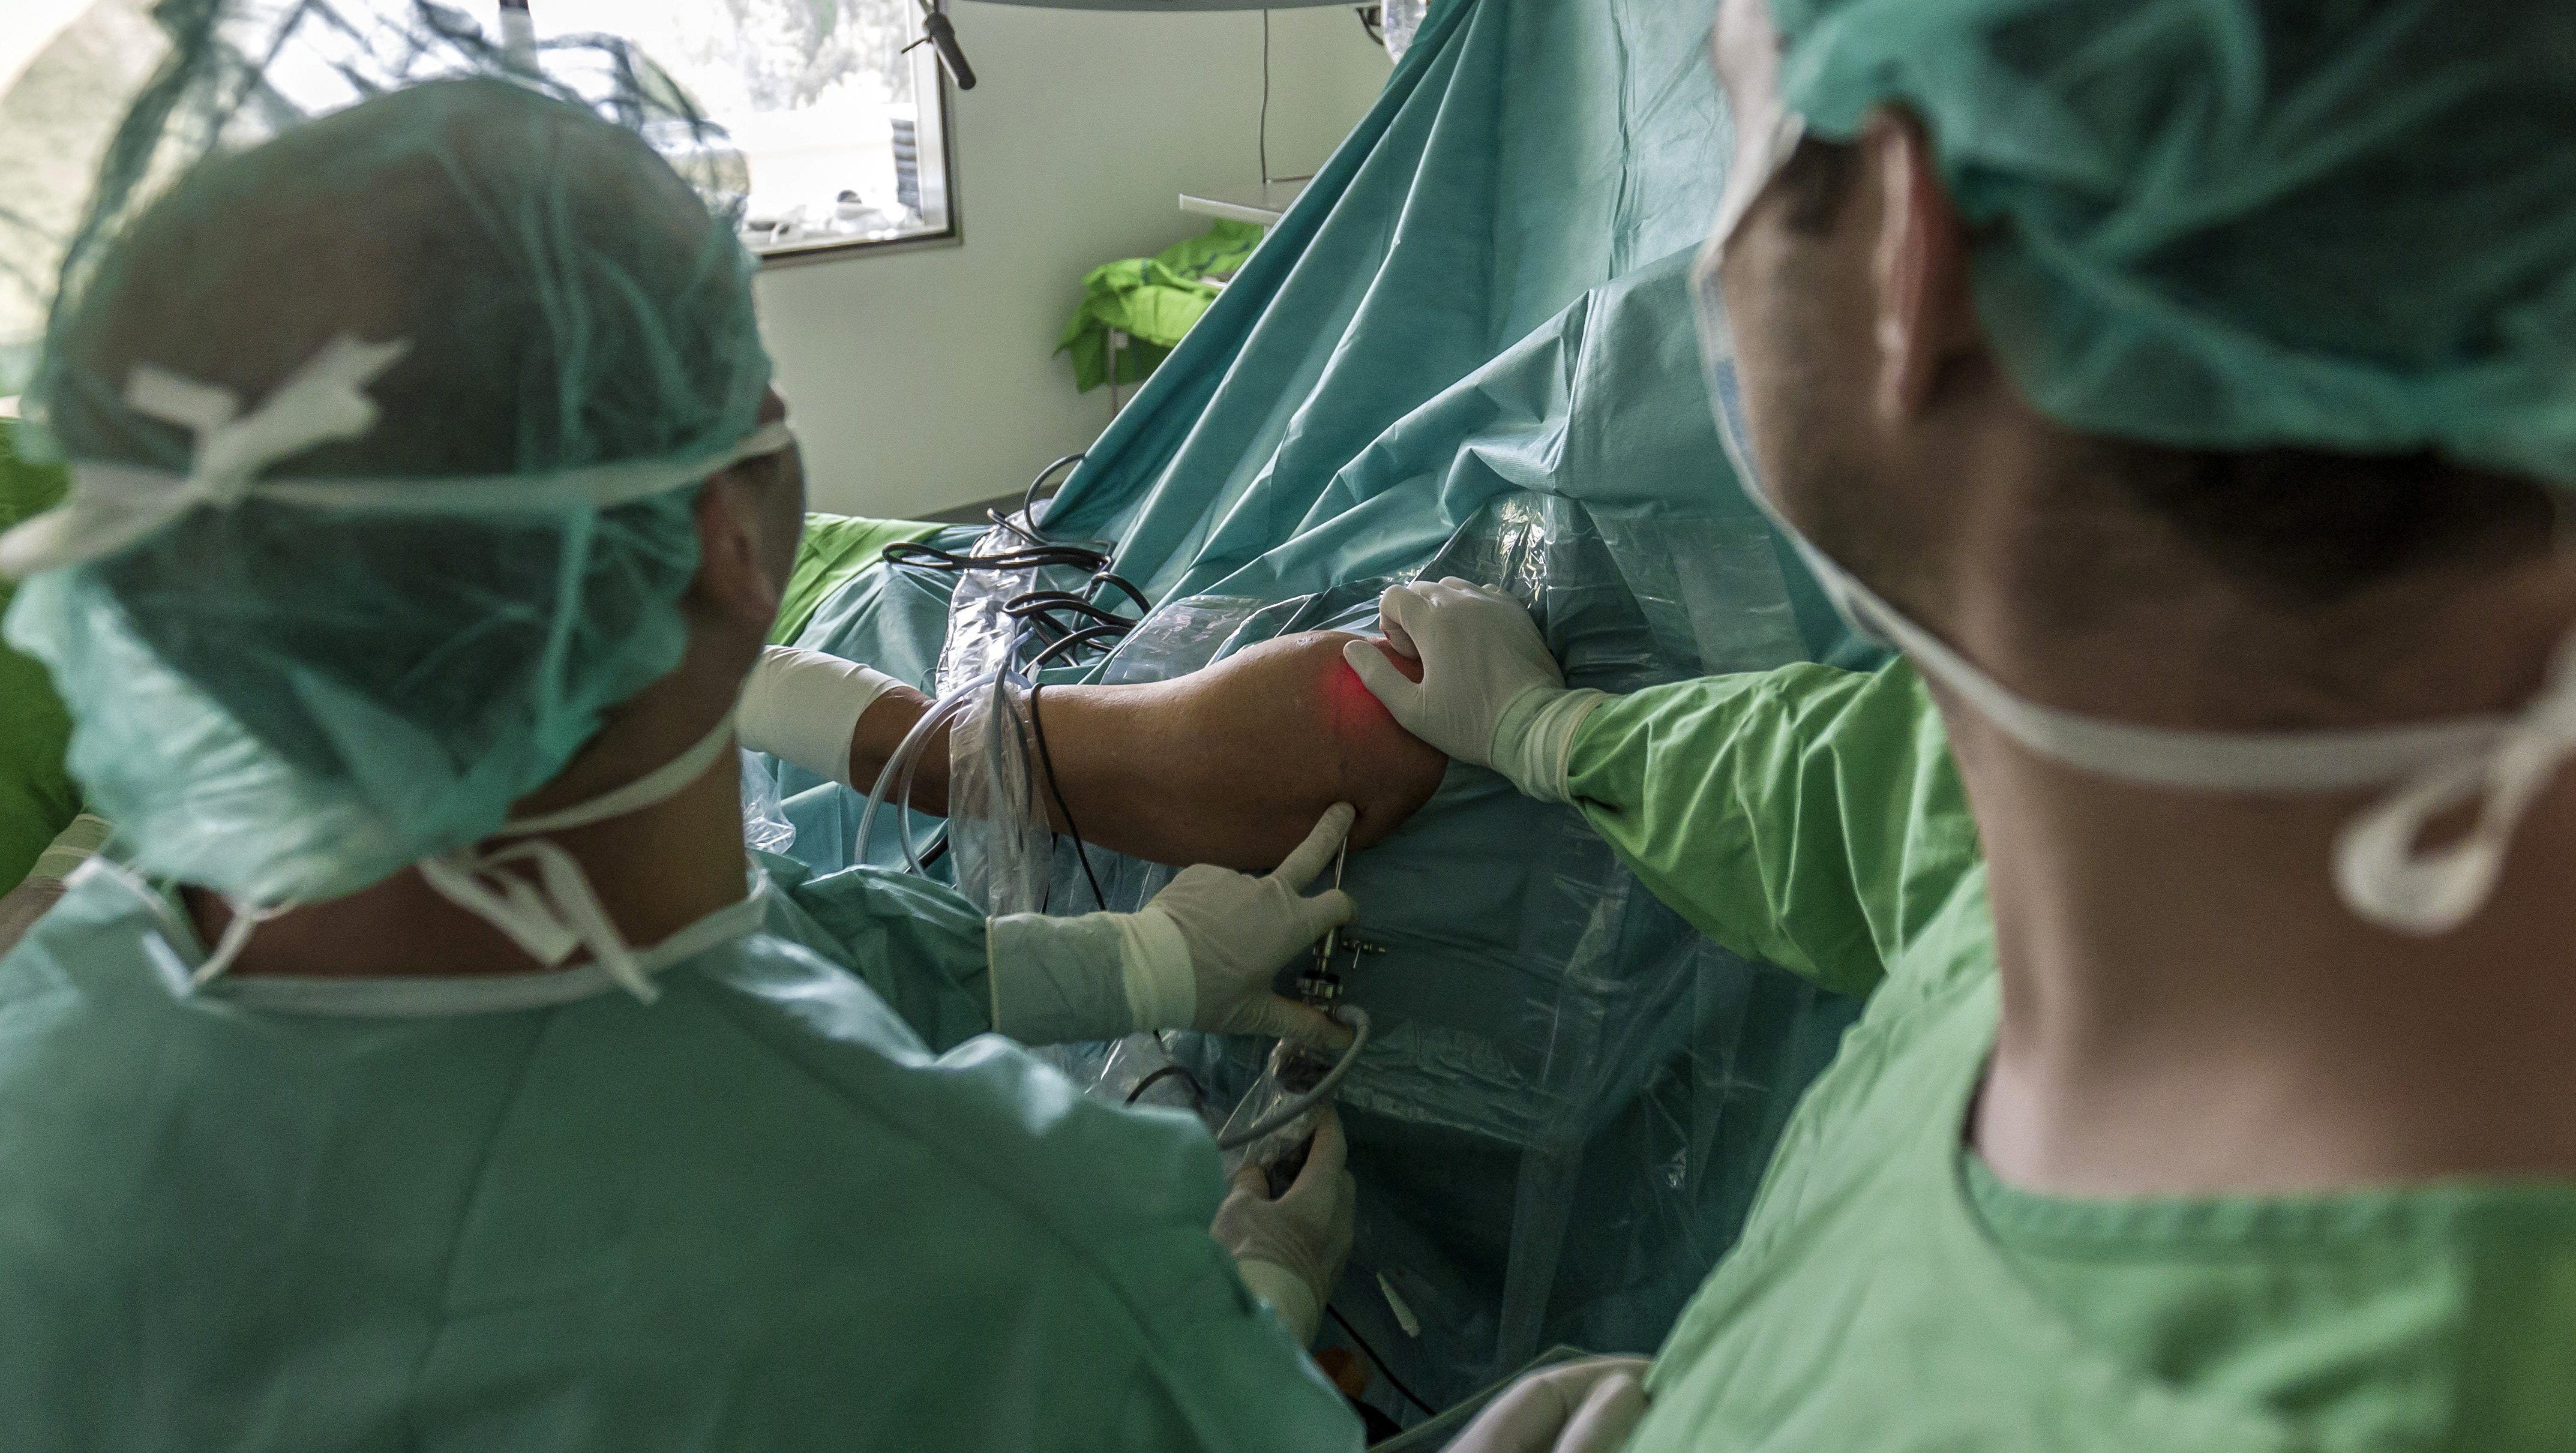 Nincs klíma, műtét közben lett rosszul a Kútvölgyi kórház egyik munkatársa